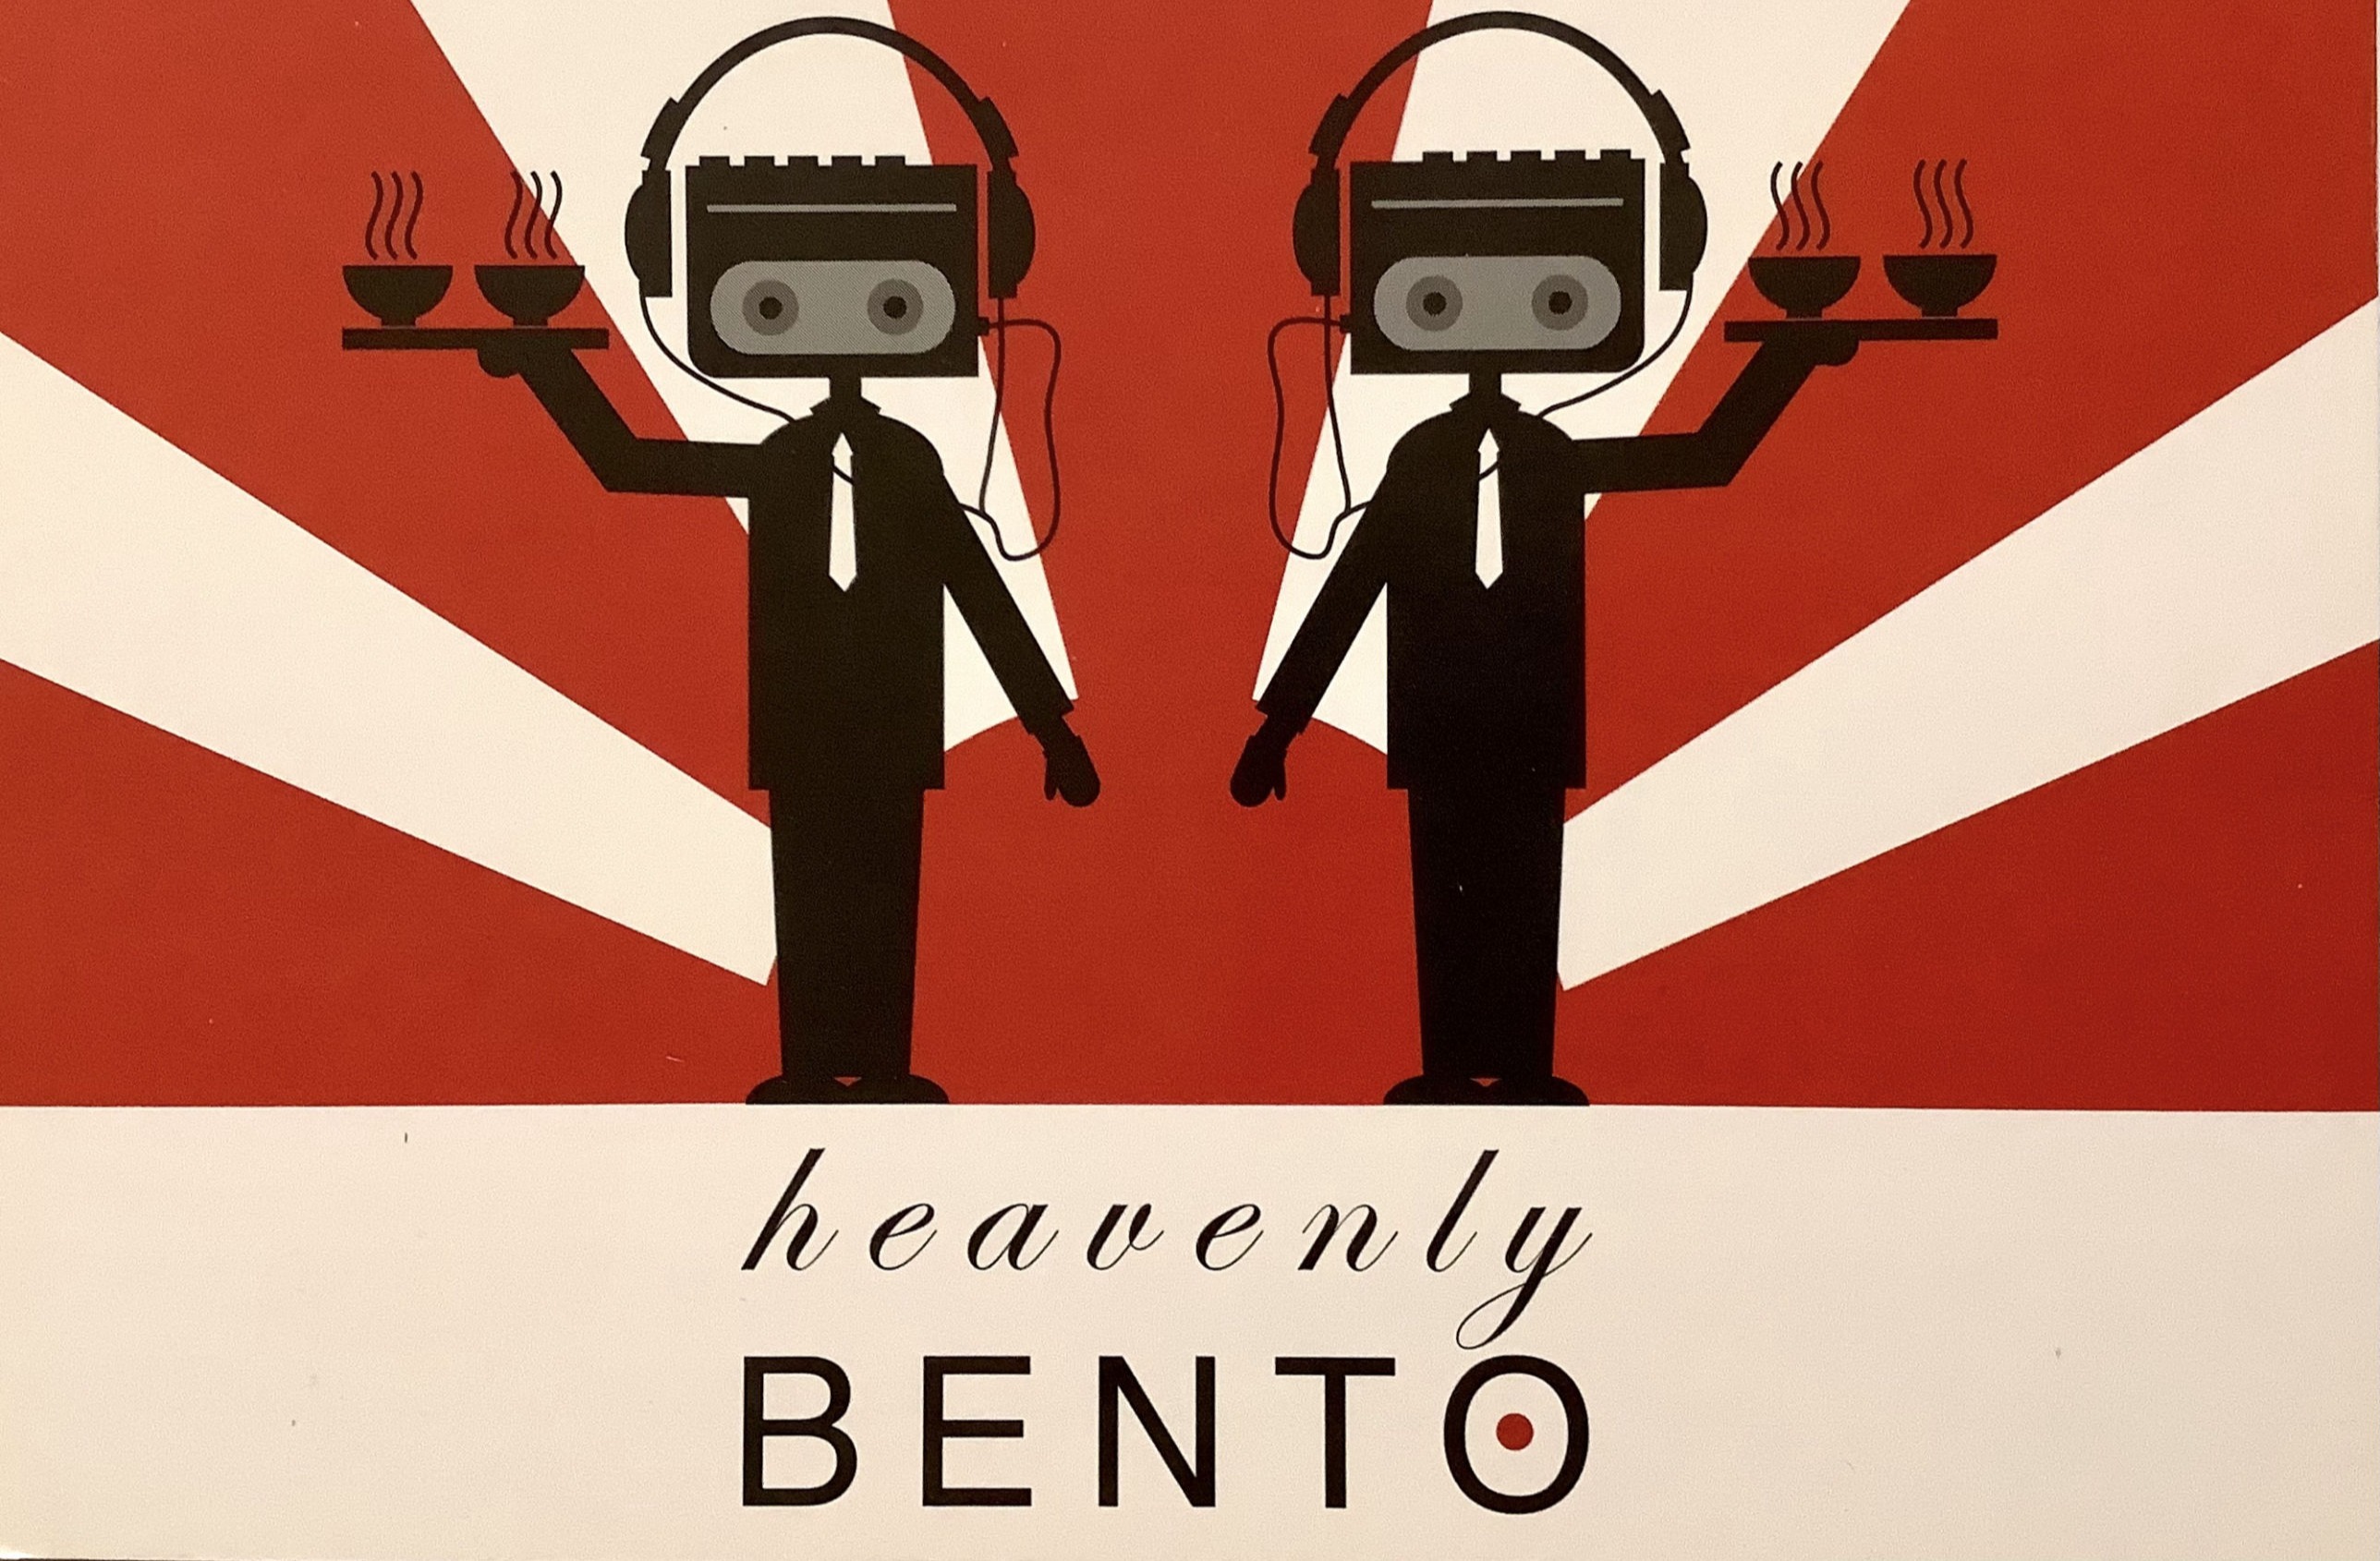 Heavenly BENTO, 2004